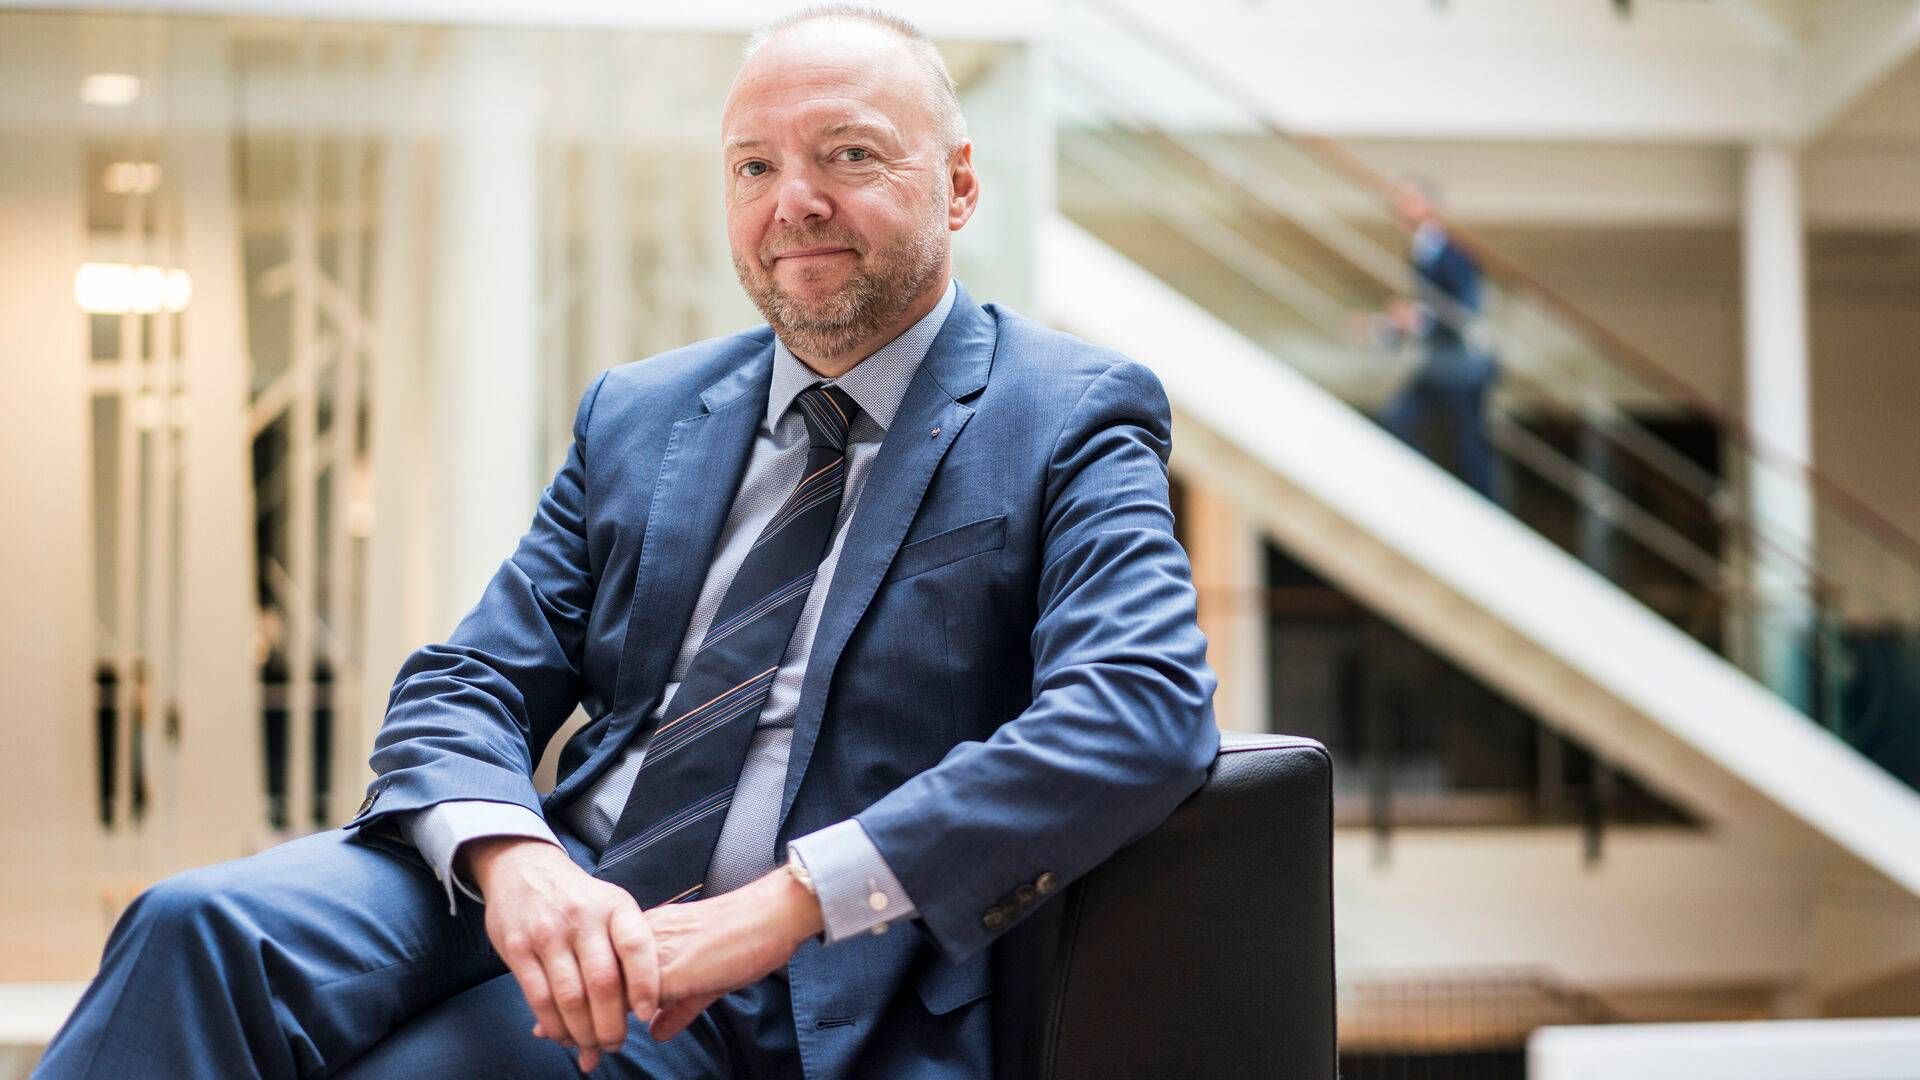 "Vi skal gennemse vores butiksnetværk," siger Jeff Gravenhorst, formand for Coop Danmark, om forestående effektiviseringer i Coop. | Foto: Bidstrup Stine/Ritzau/Ritzau Scanpix